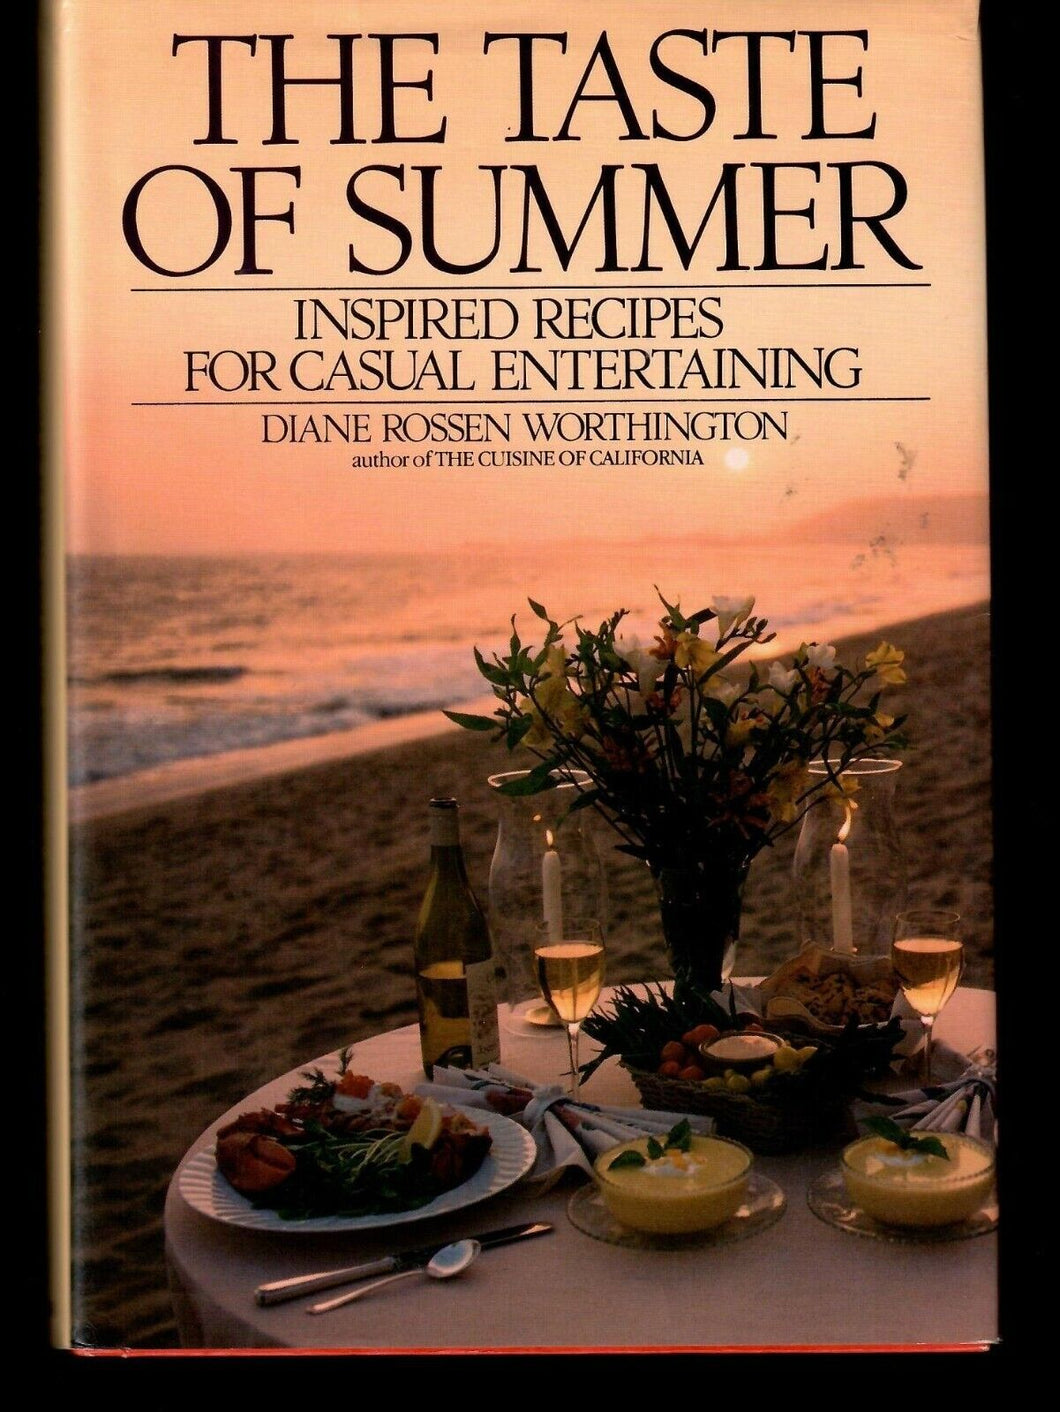 The Taste of Summer Inspired Recipes for Casual Entertaining by Diane Rosen Worthington